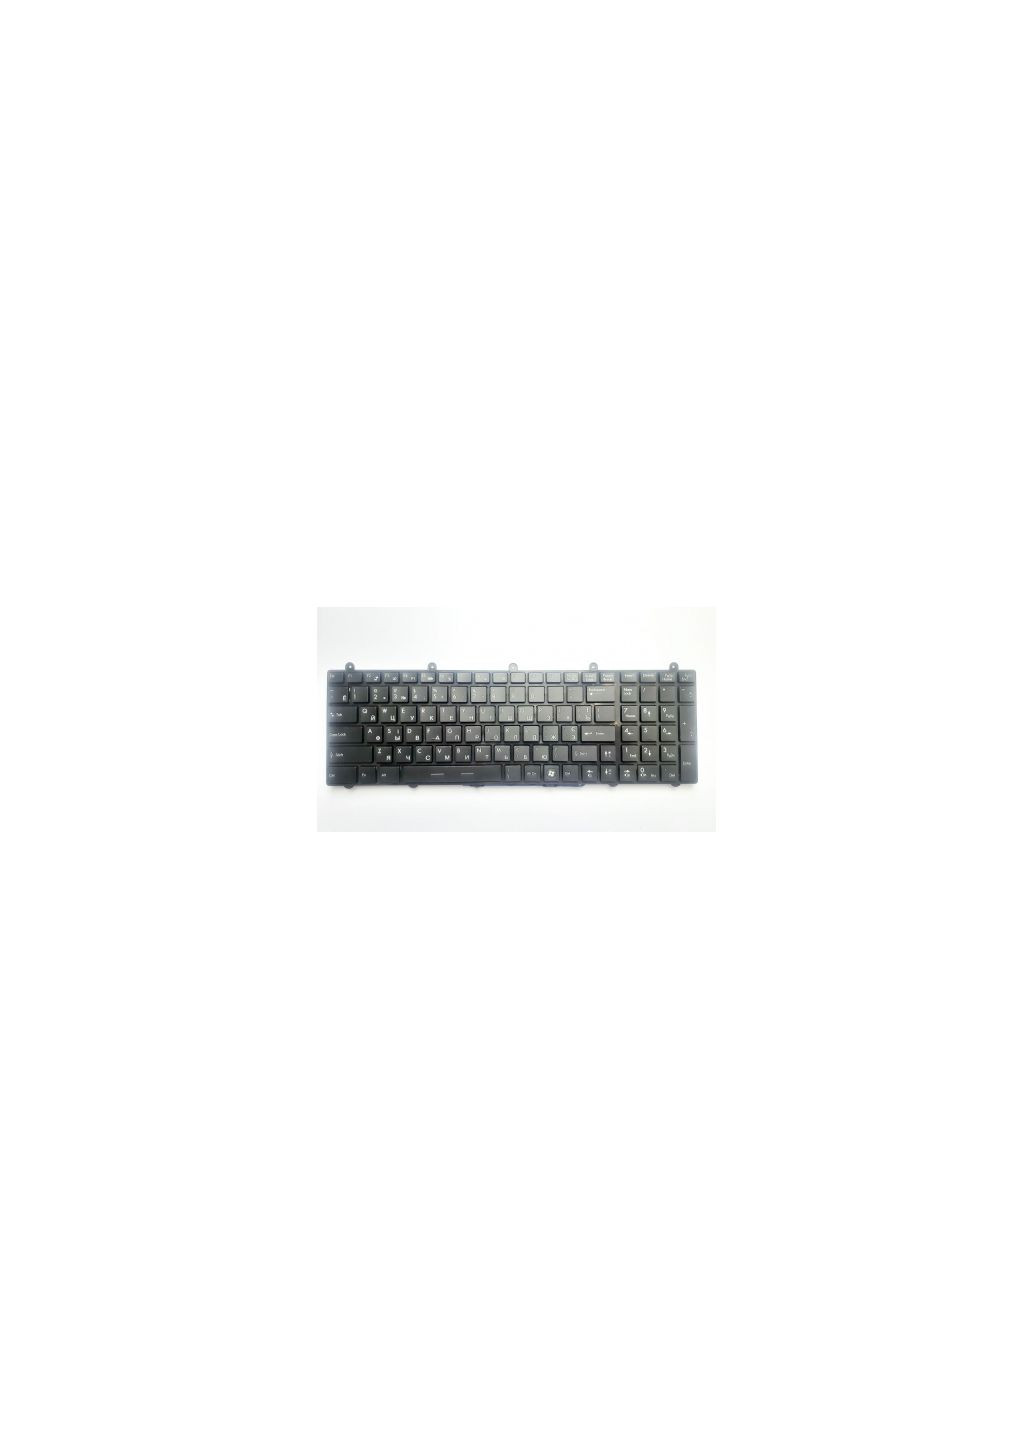 Клавиатура ноутбука GT60/GT70/GT780/GT783/GX780 черная с черной с подсветкой UA (A46179) MSI gt60/gt70/gt780/gt783/gx780 черна з черной з подсв (276708063)